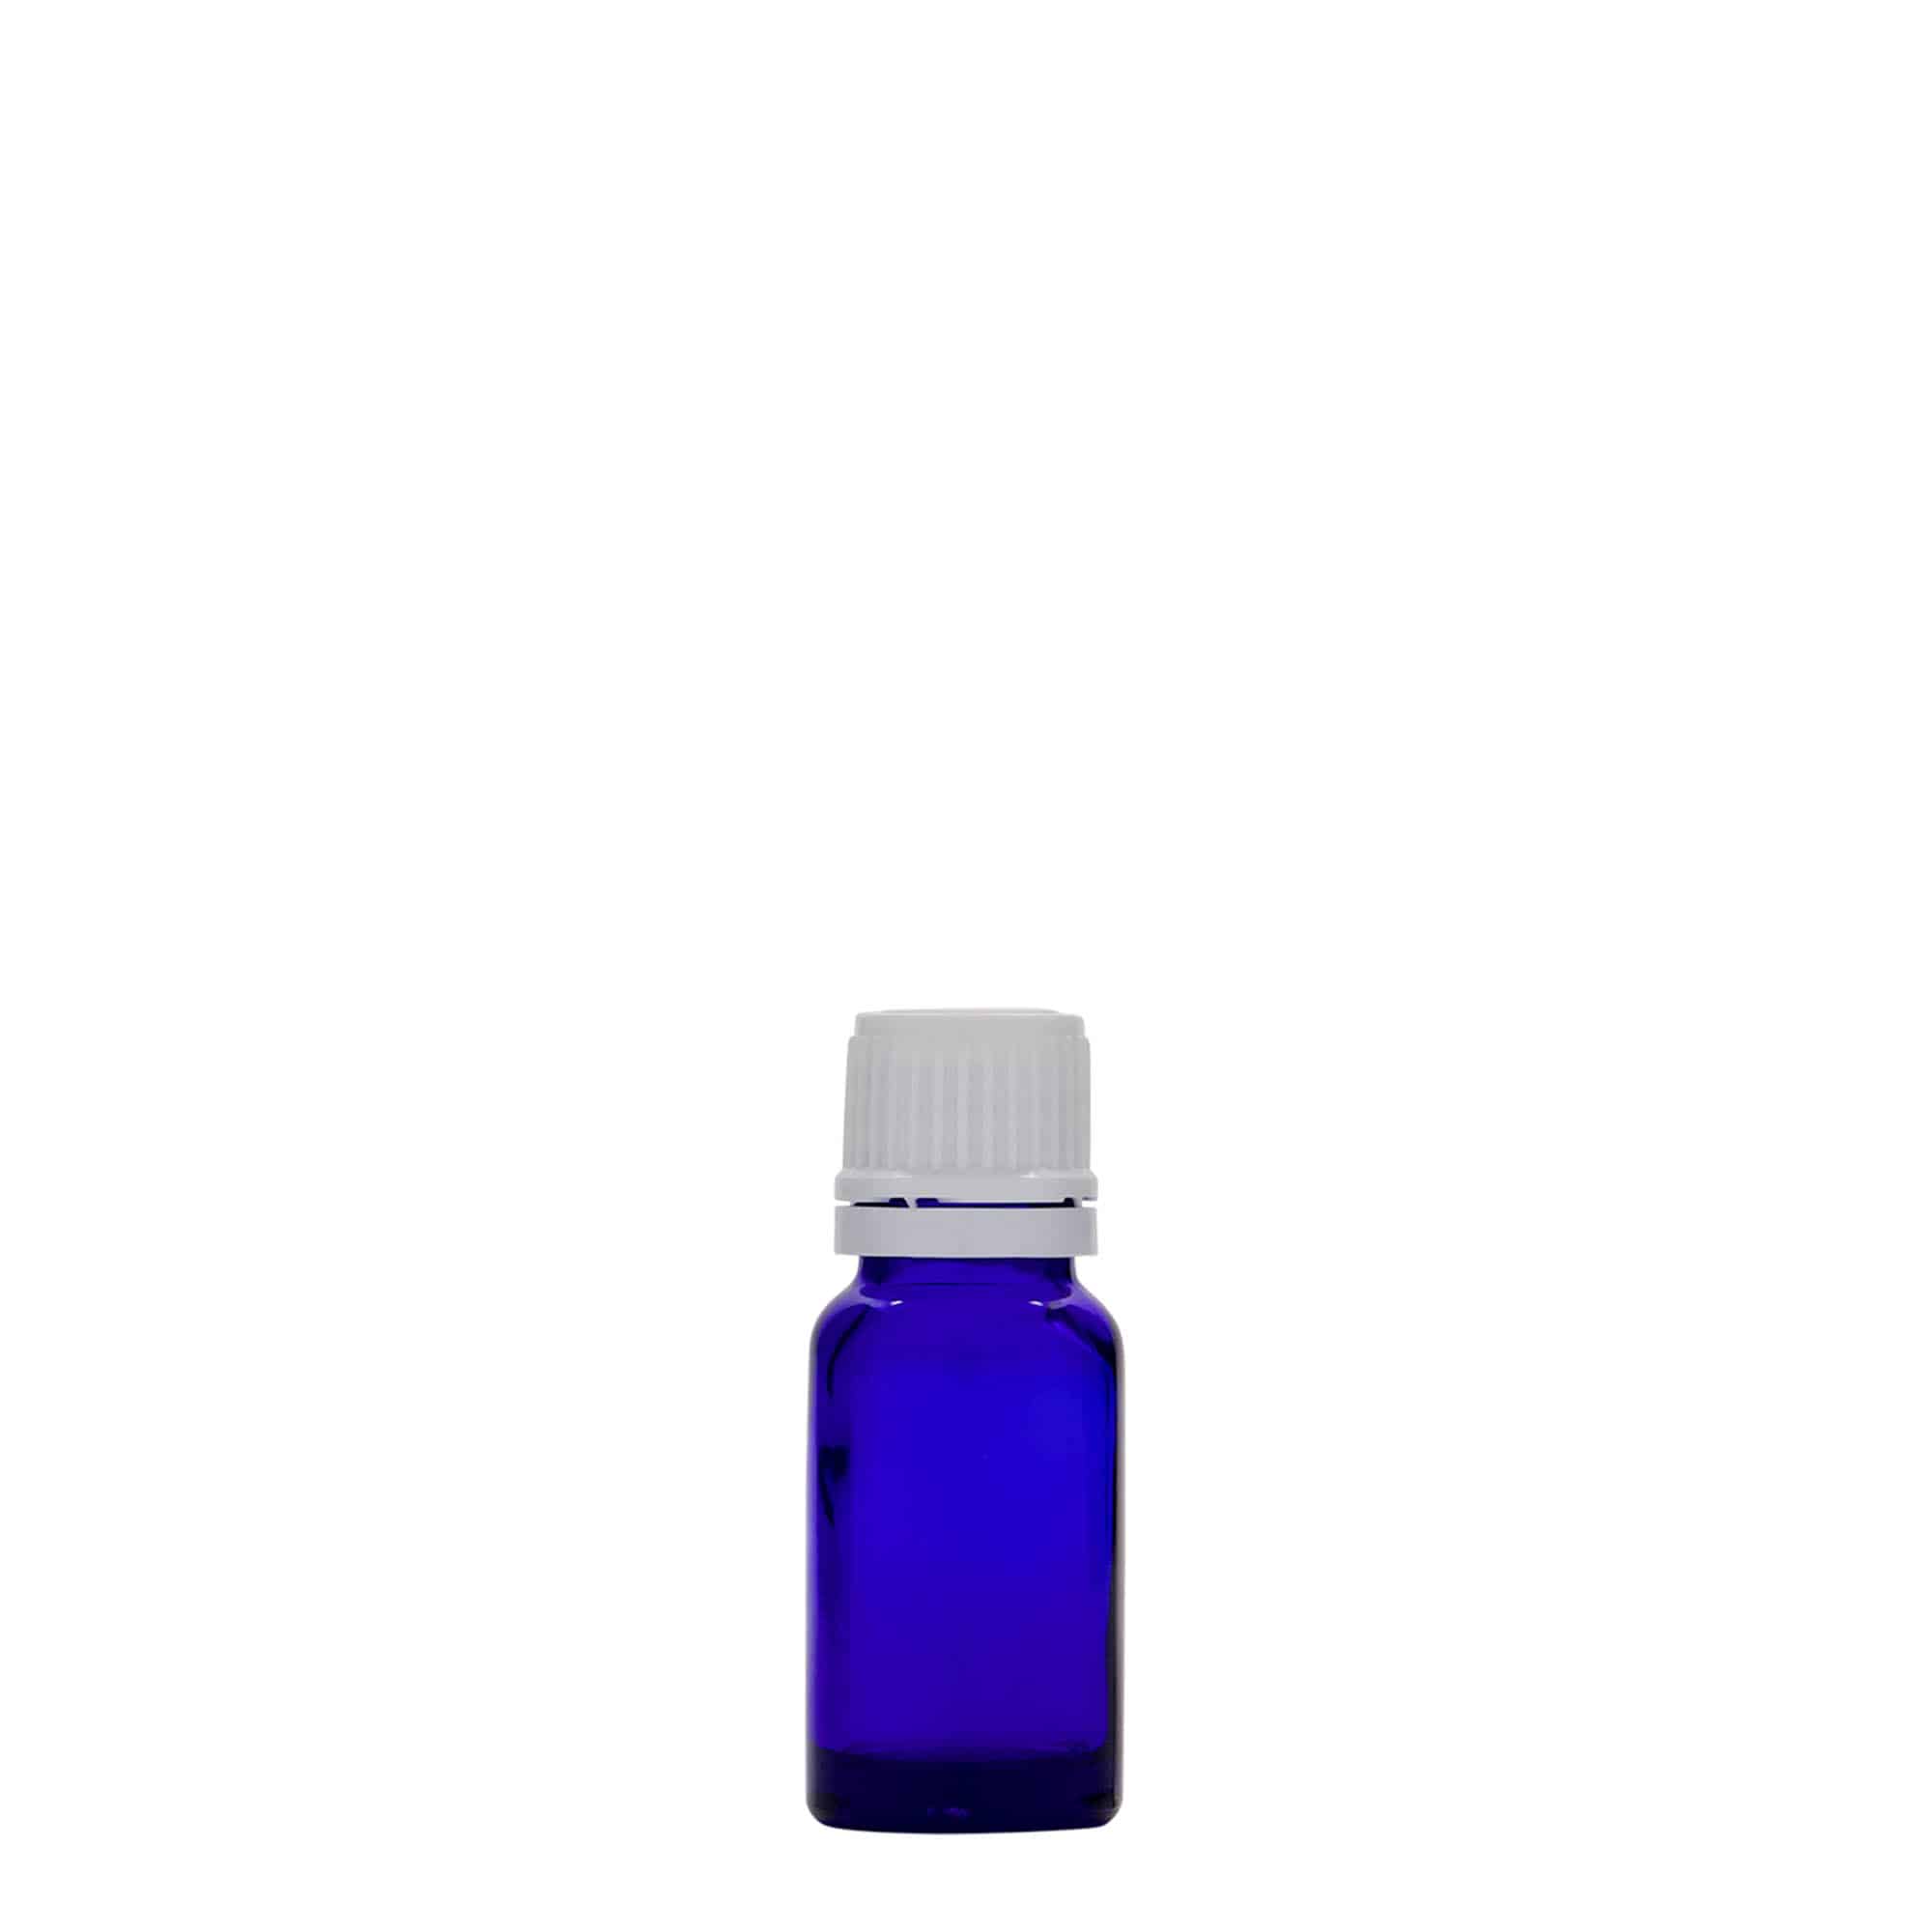 10 ml butelka farmaceutyczna, szkło, kolor błękit królewski, zamknięcie: DIN 18